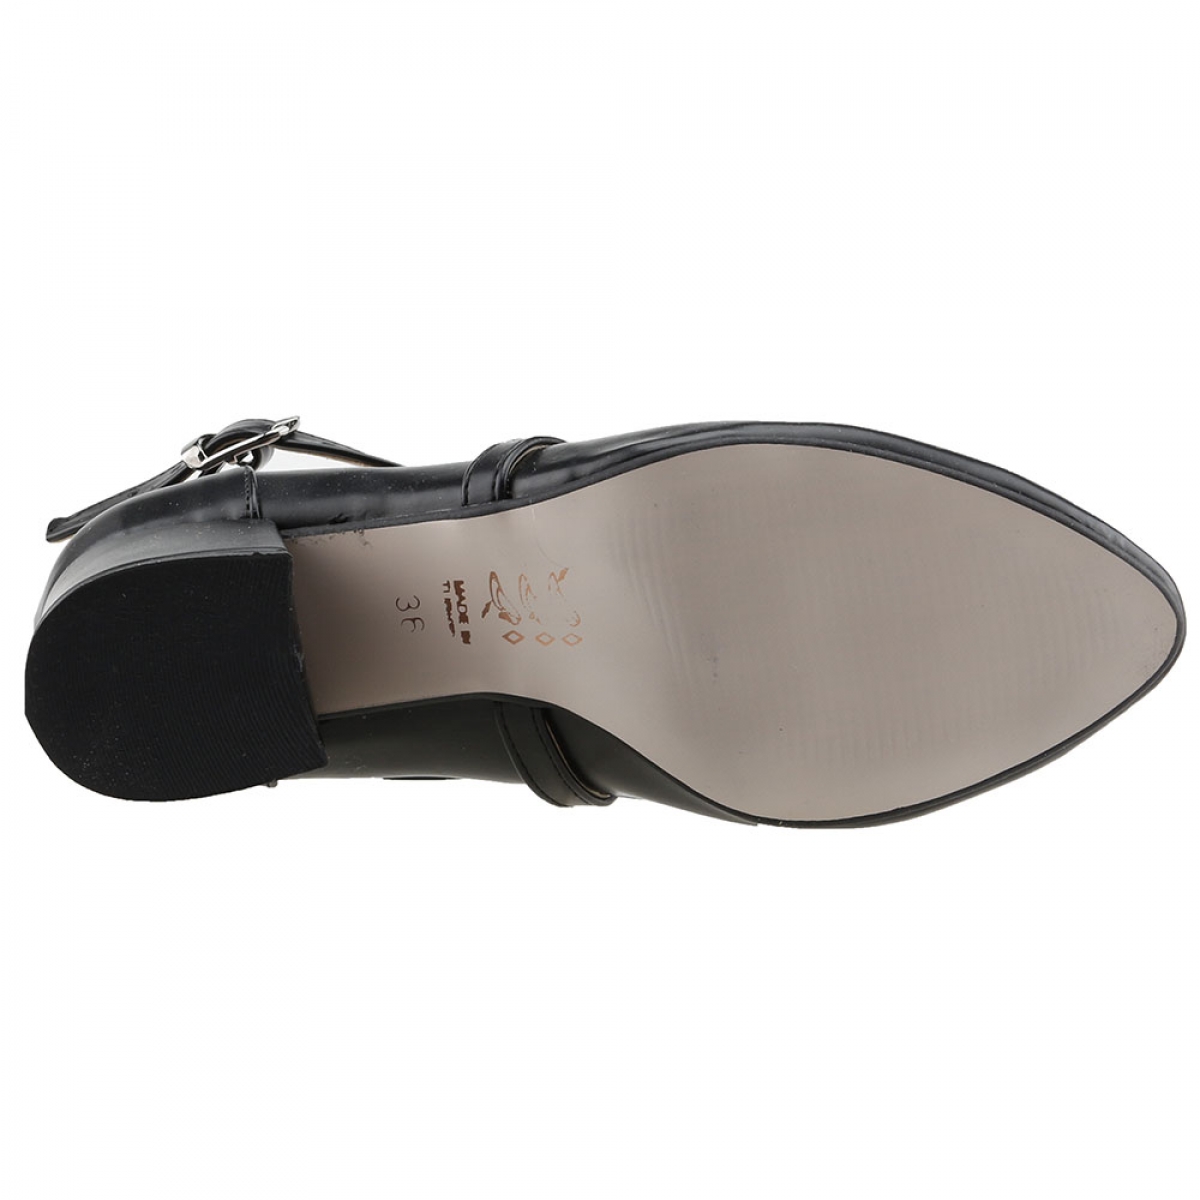 Flo 544-1121 Cilt 5 Cm Topuk Bayan Sandalet Ayakkabı Siyah. 5